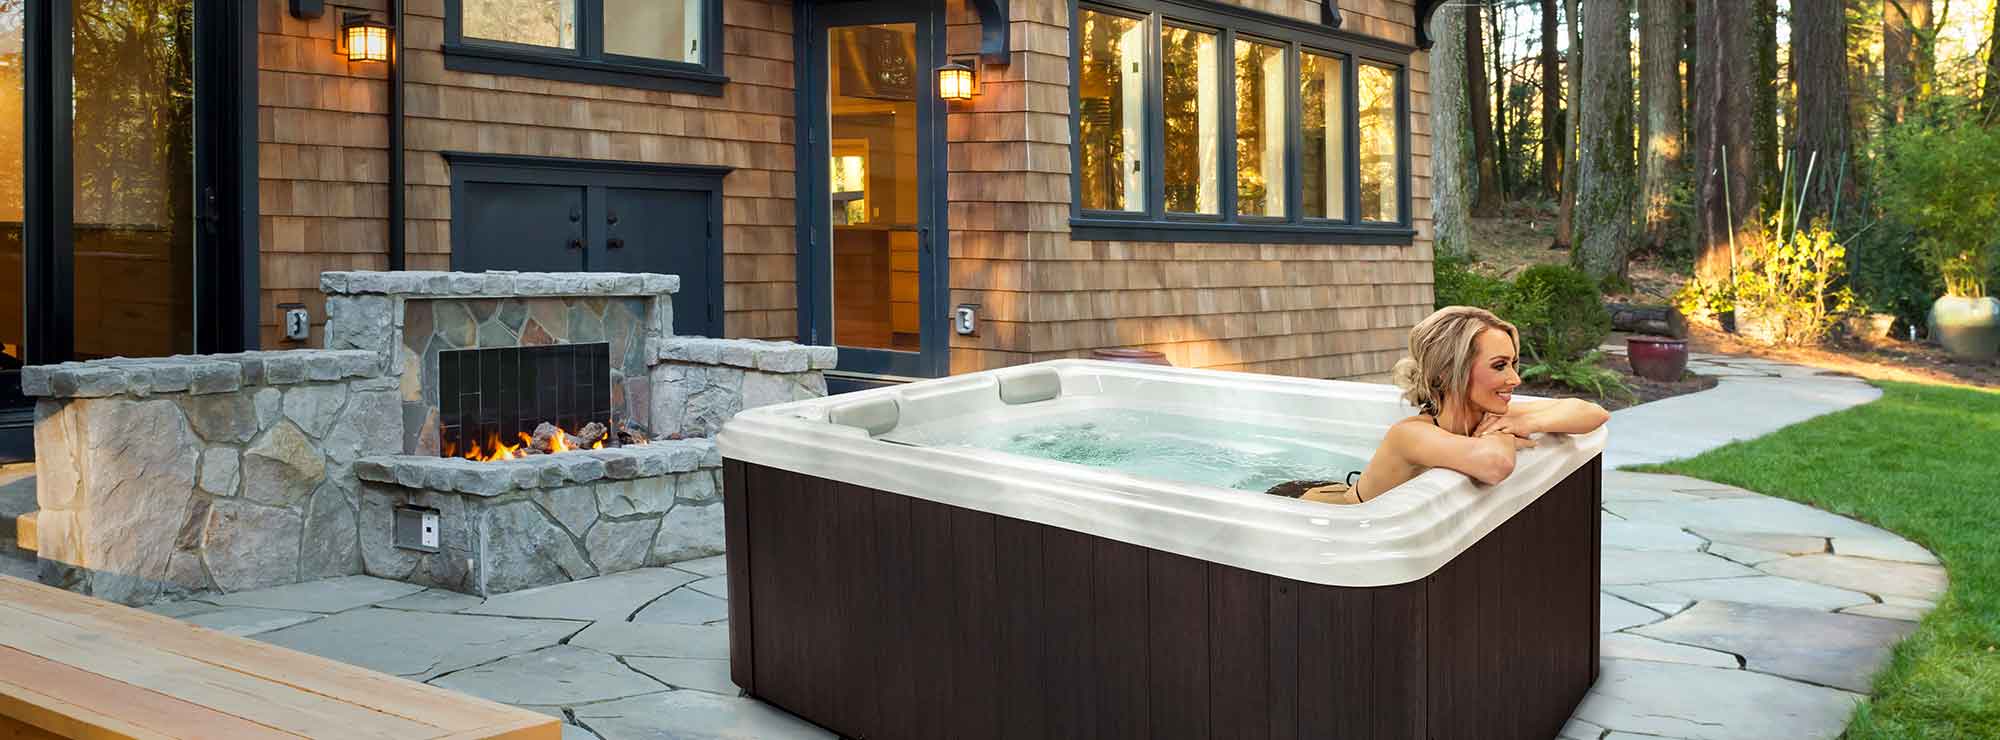 Garden Forsythia Spa & Hot Tub Lifestyle